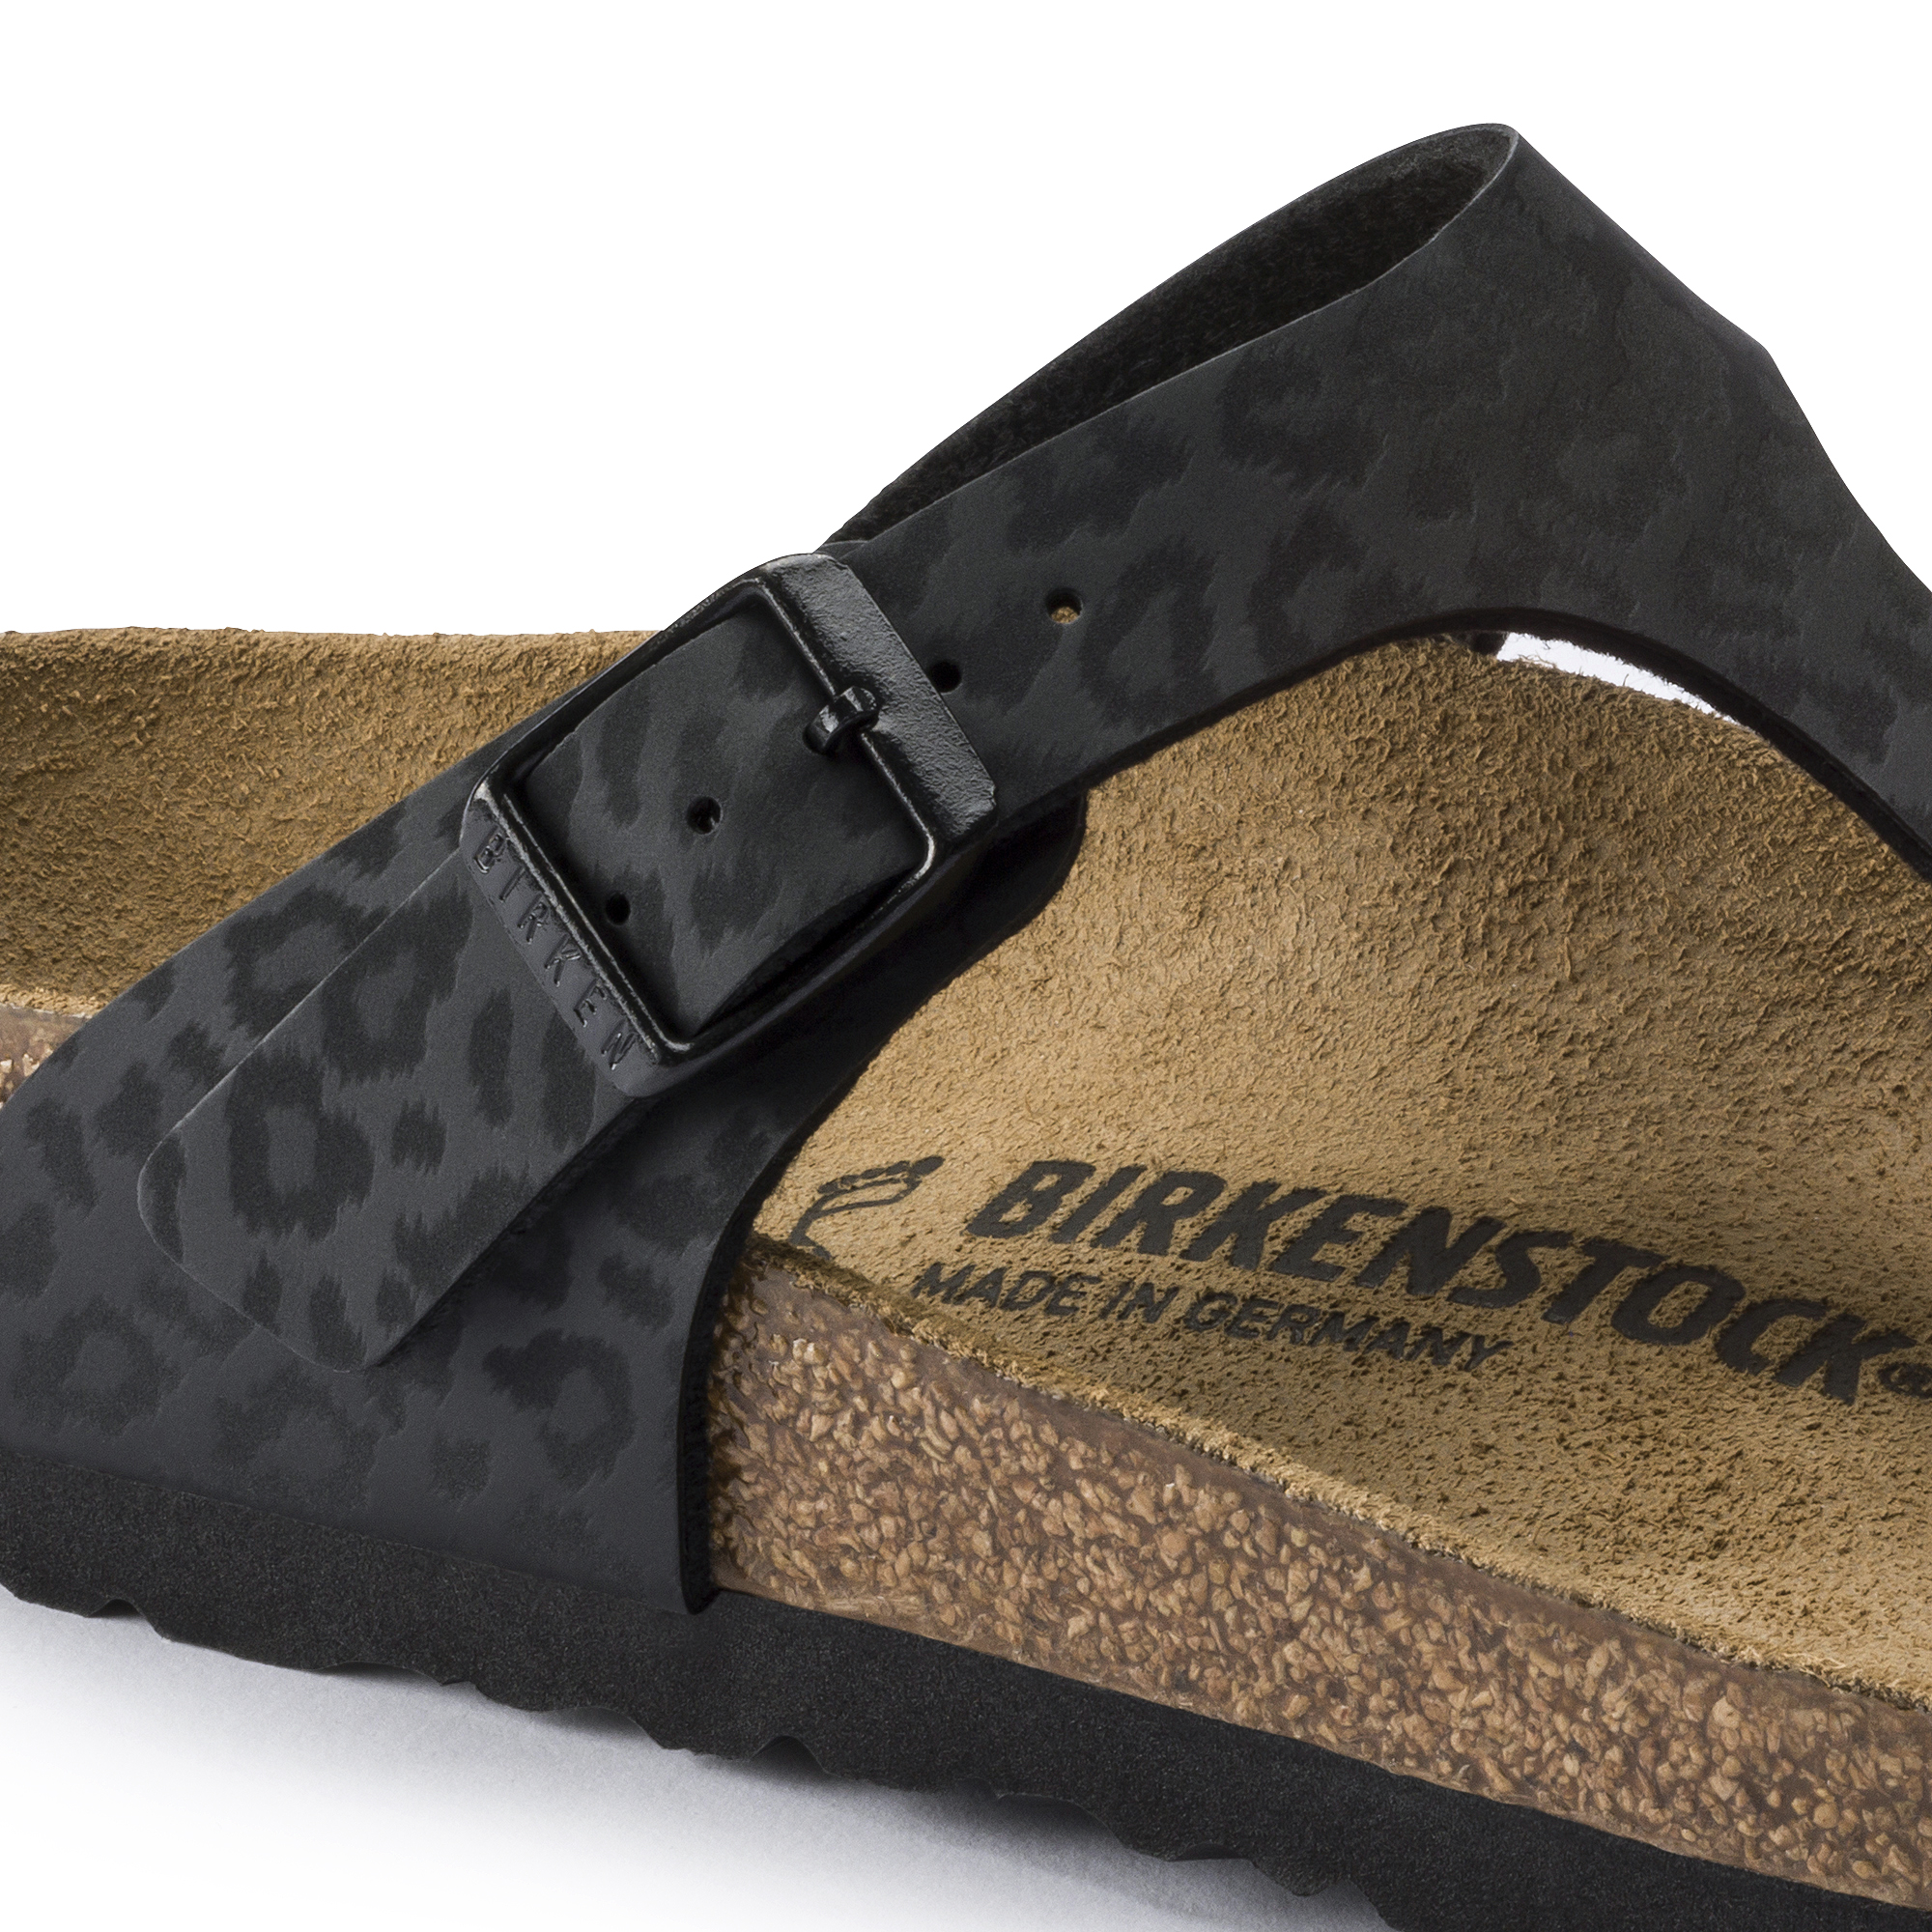 leopard birkenstock sandals